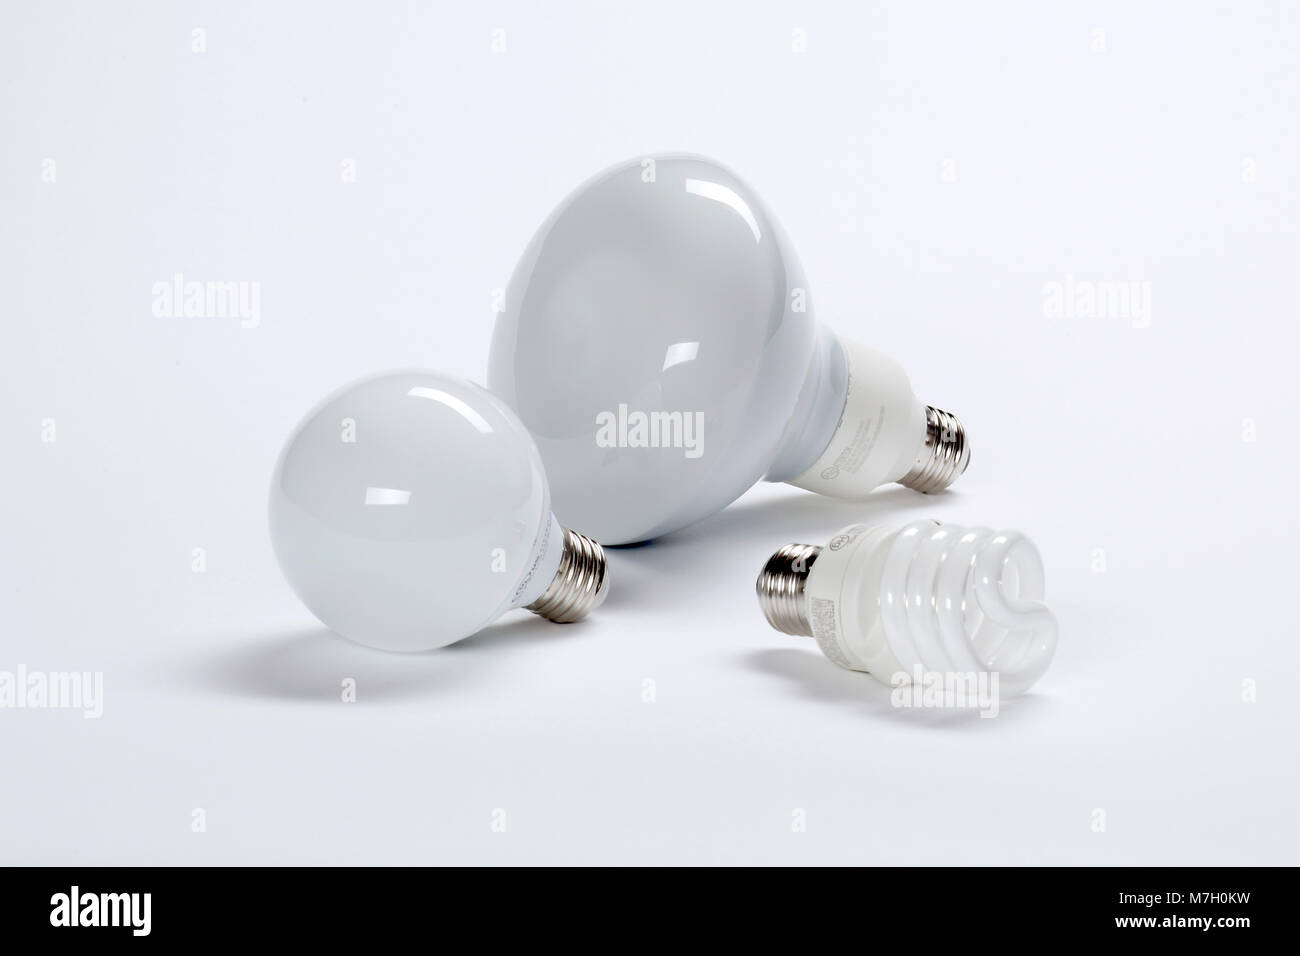 Las bombillas fluorescentes compactas de bajo consumo. Foto de stock